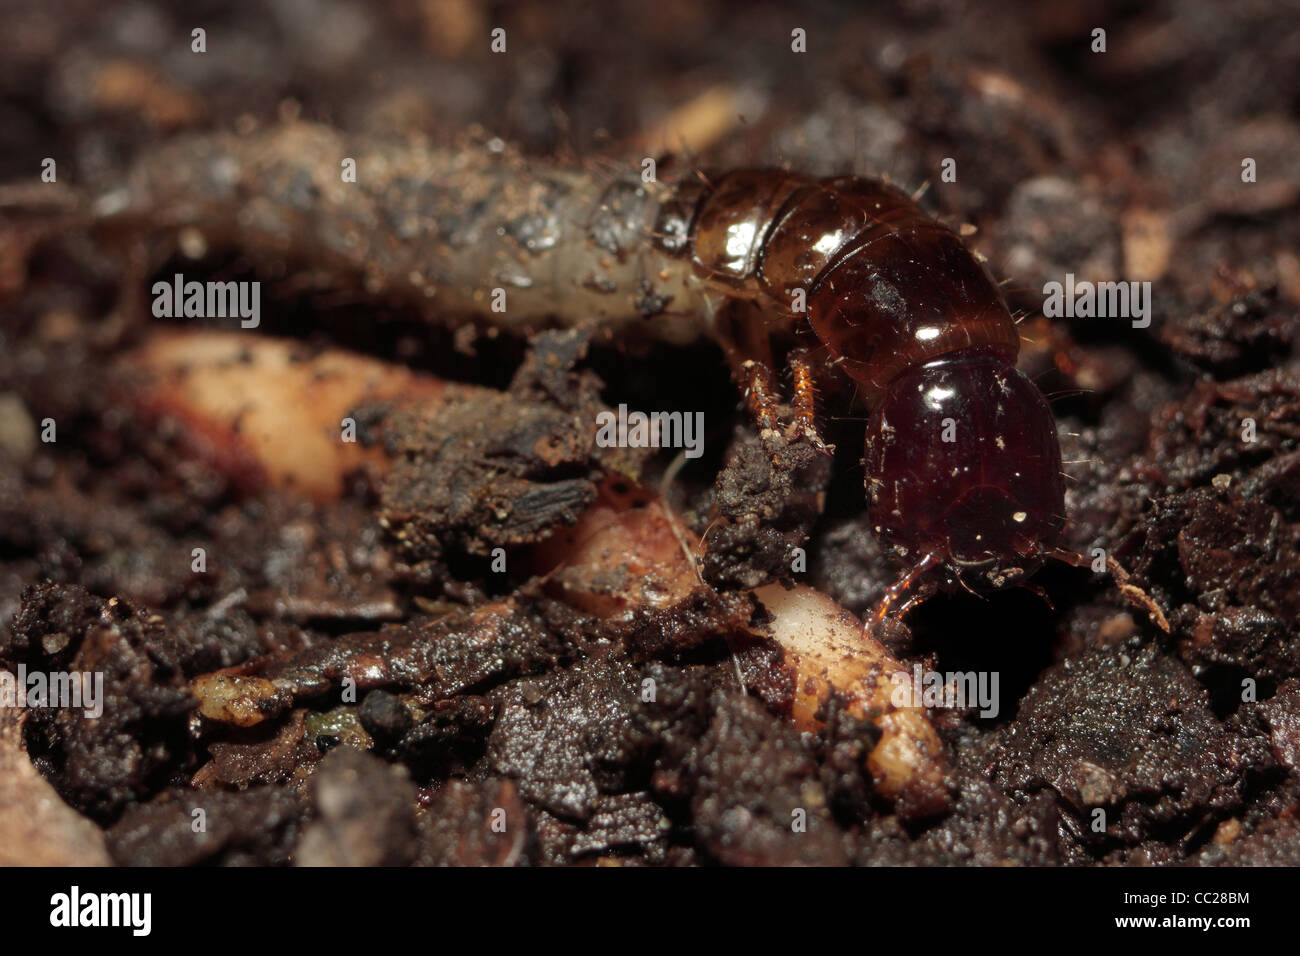 Las larvas de escarabajos de tierra Foto de stock